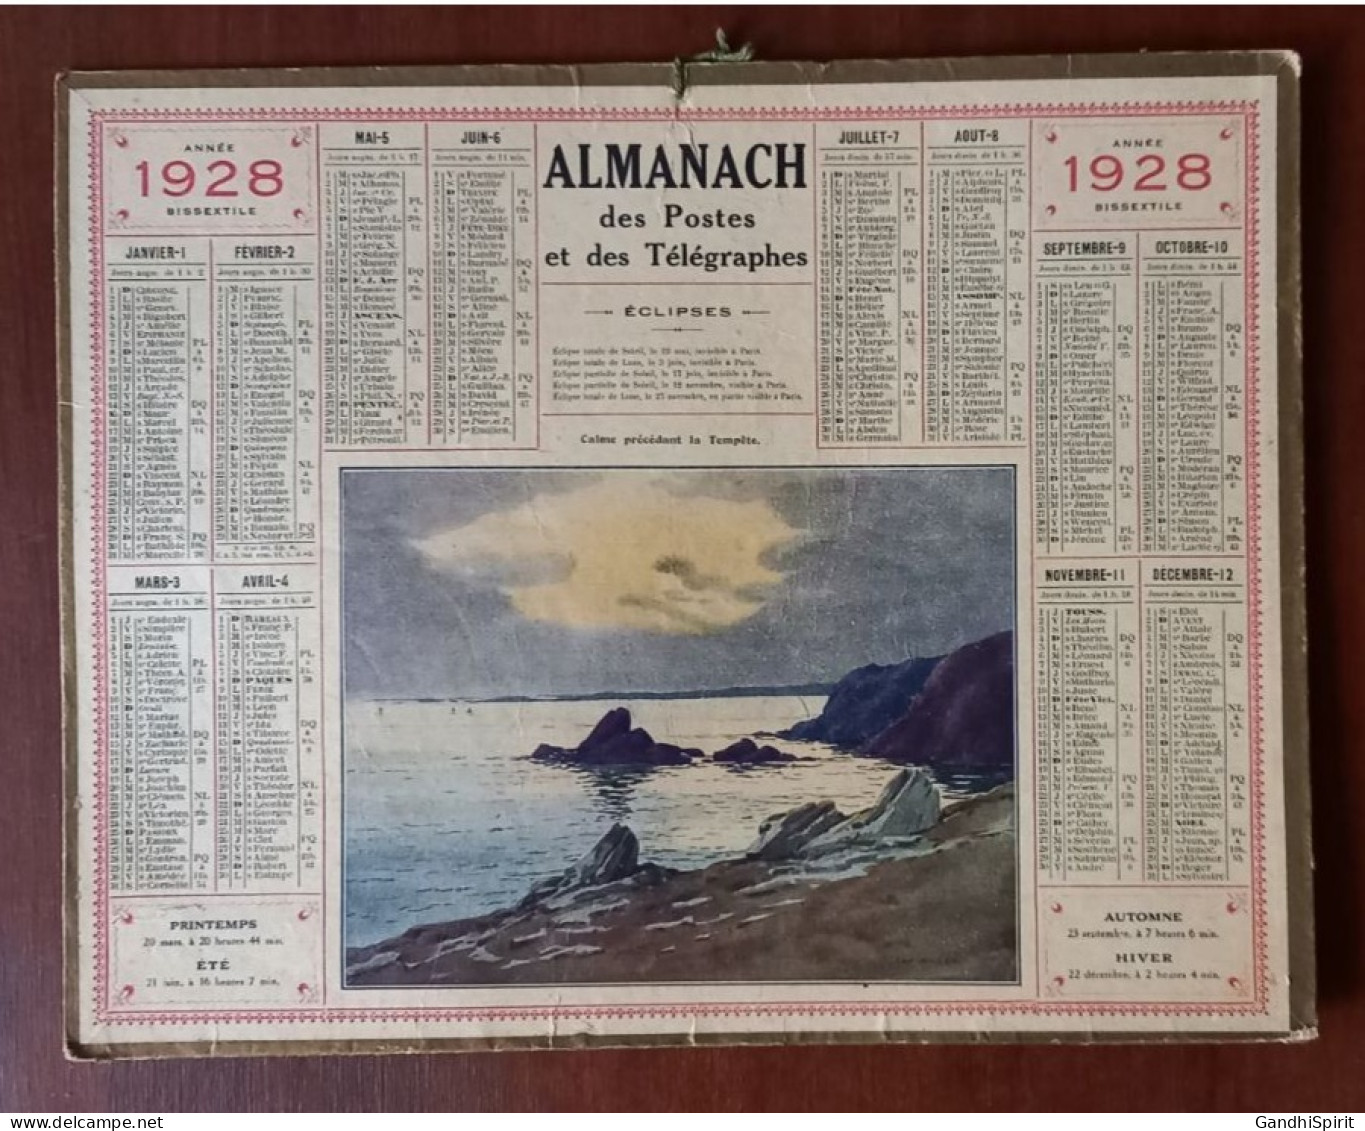 1928 Calendrier / Almanach Illustré Par ??? Calme Précédant La Tempête (Bord De Mer) Année Bissextile - Grand Format : 1921-40